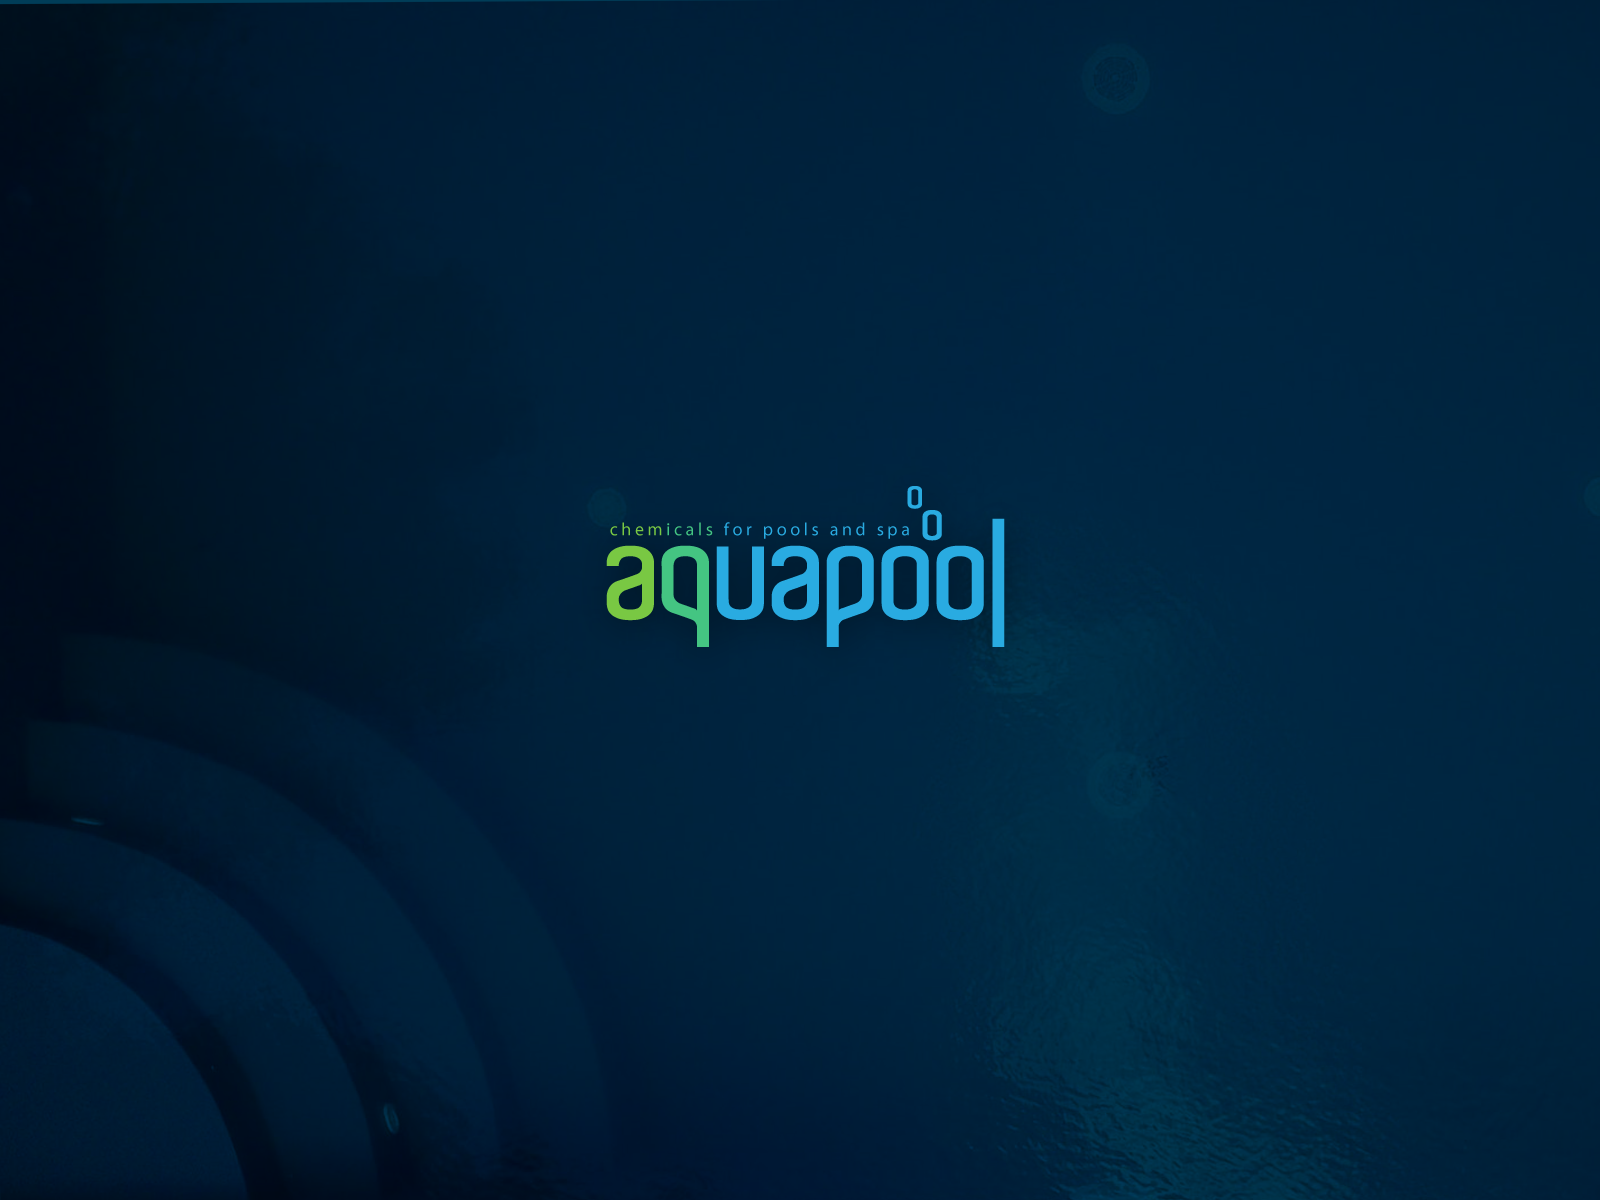 Stijg Afgeschaft Parasiet aquapool by SoulDesigner on Dribbble